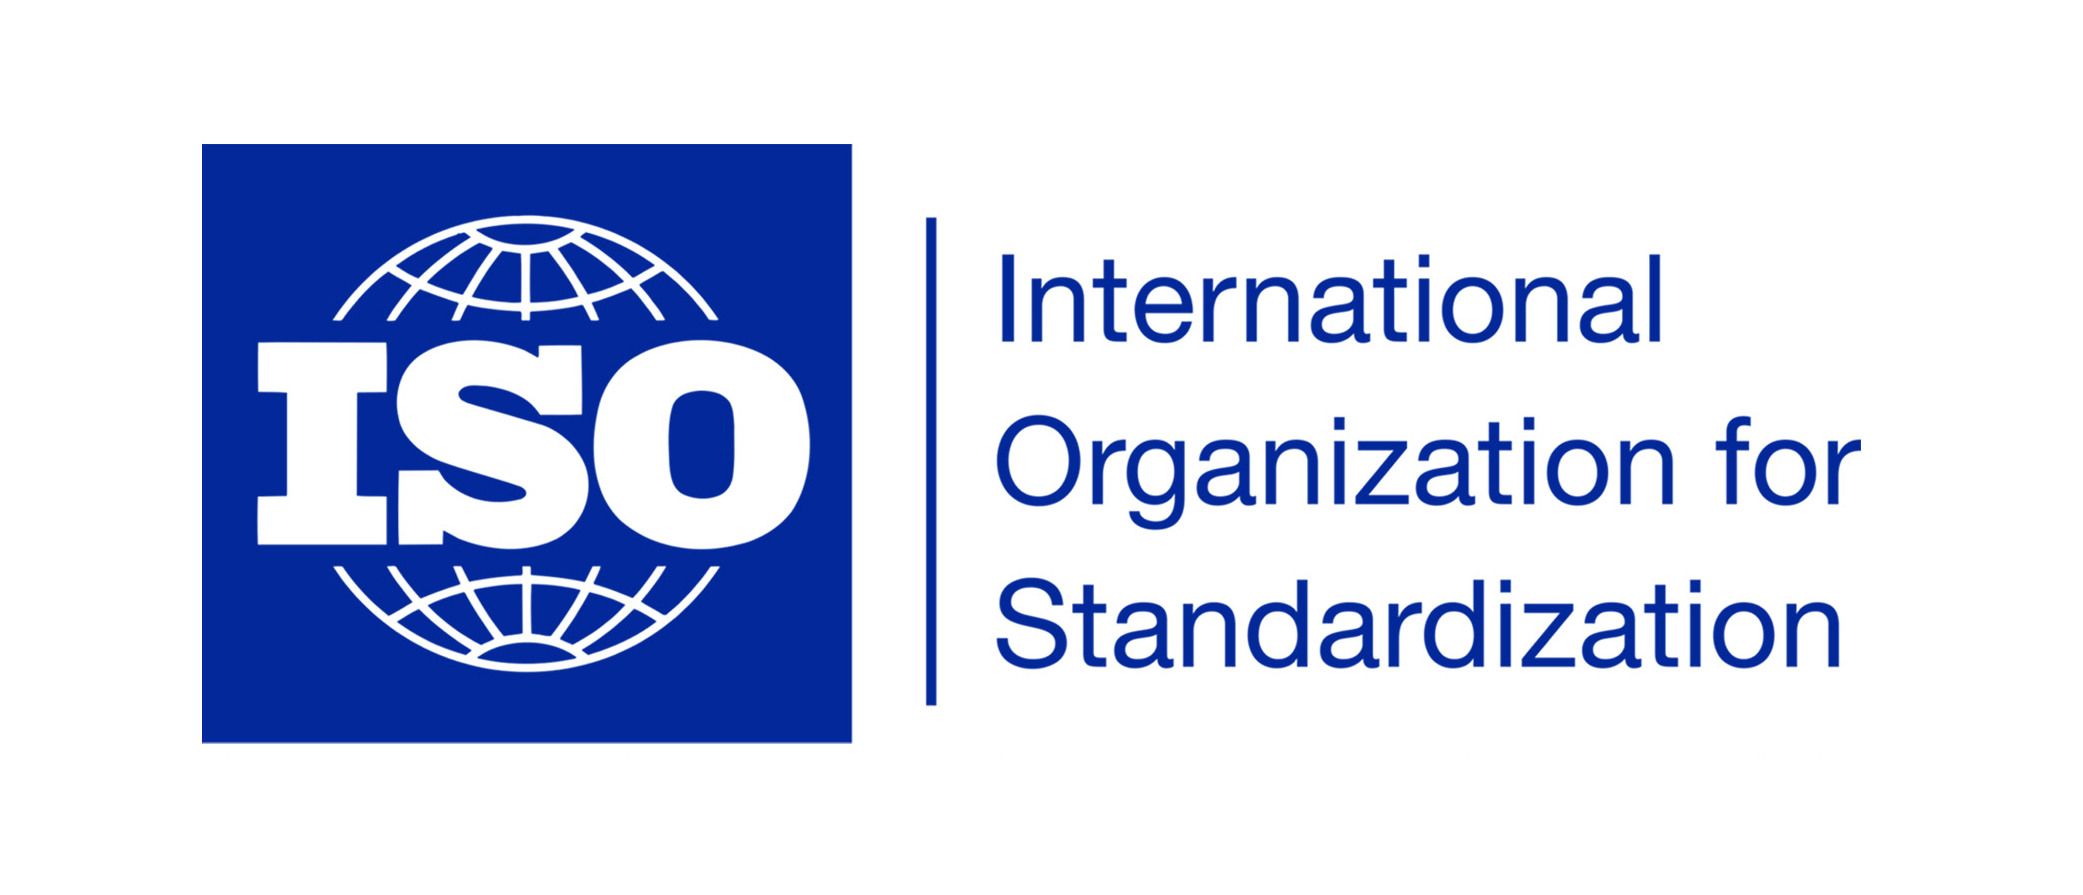 آموزش استاندارد ایزو ISOTs29001-2020 آموزشگاه مهرگان